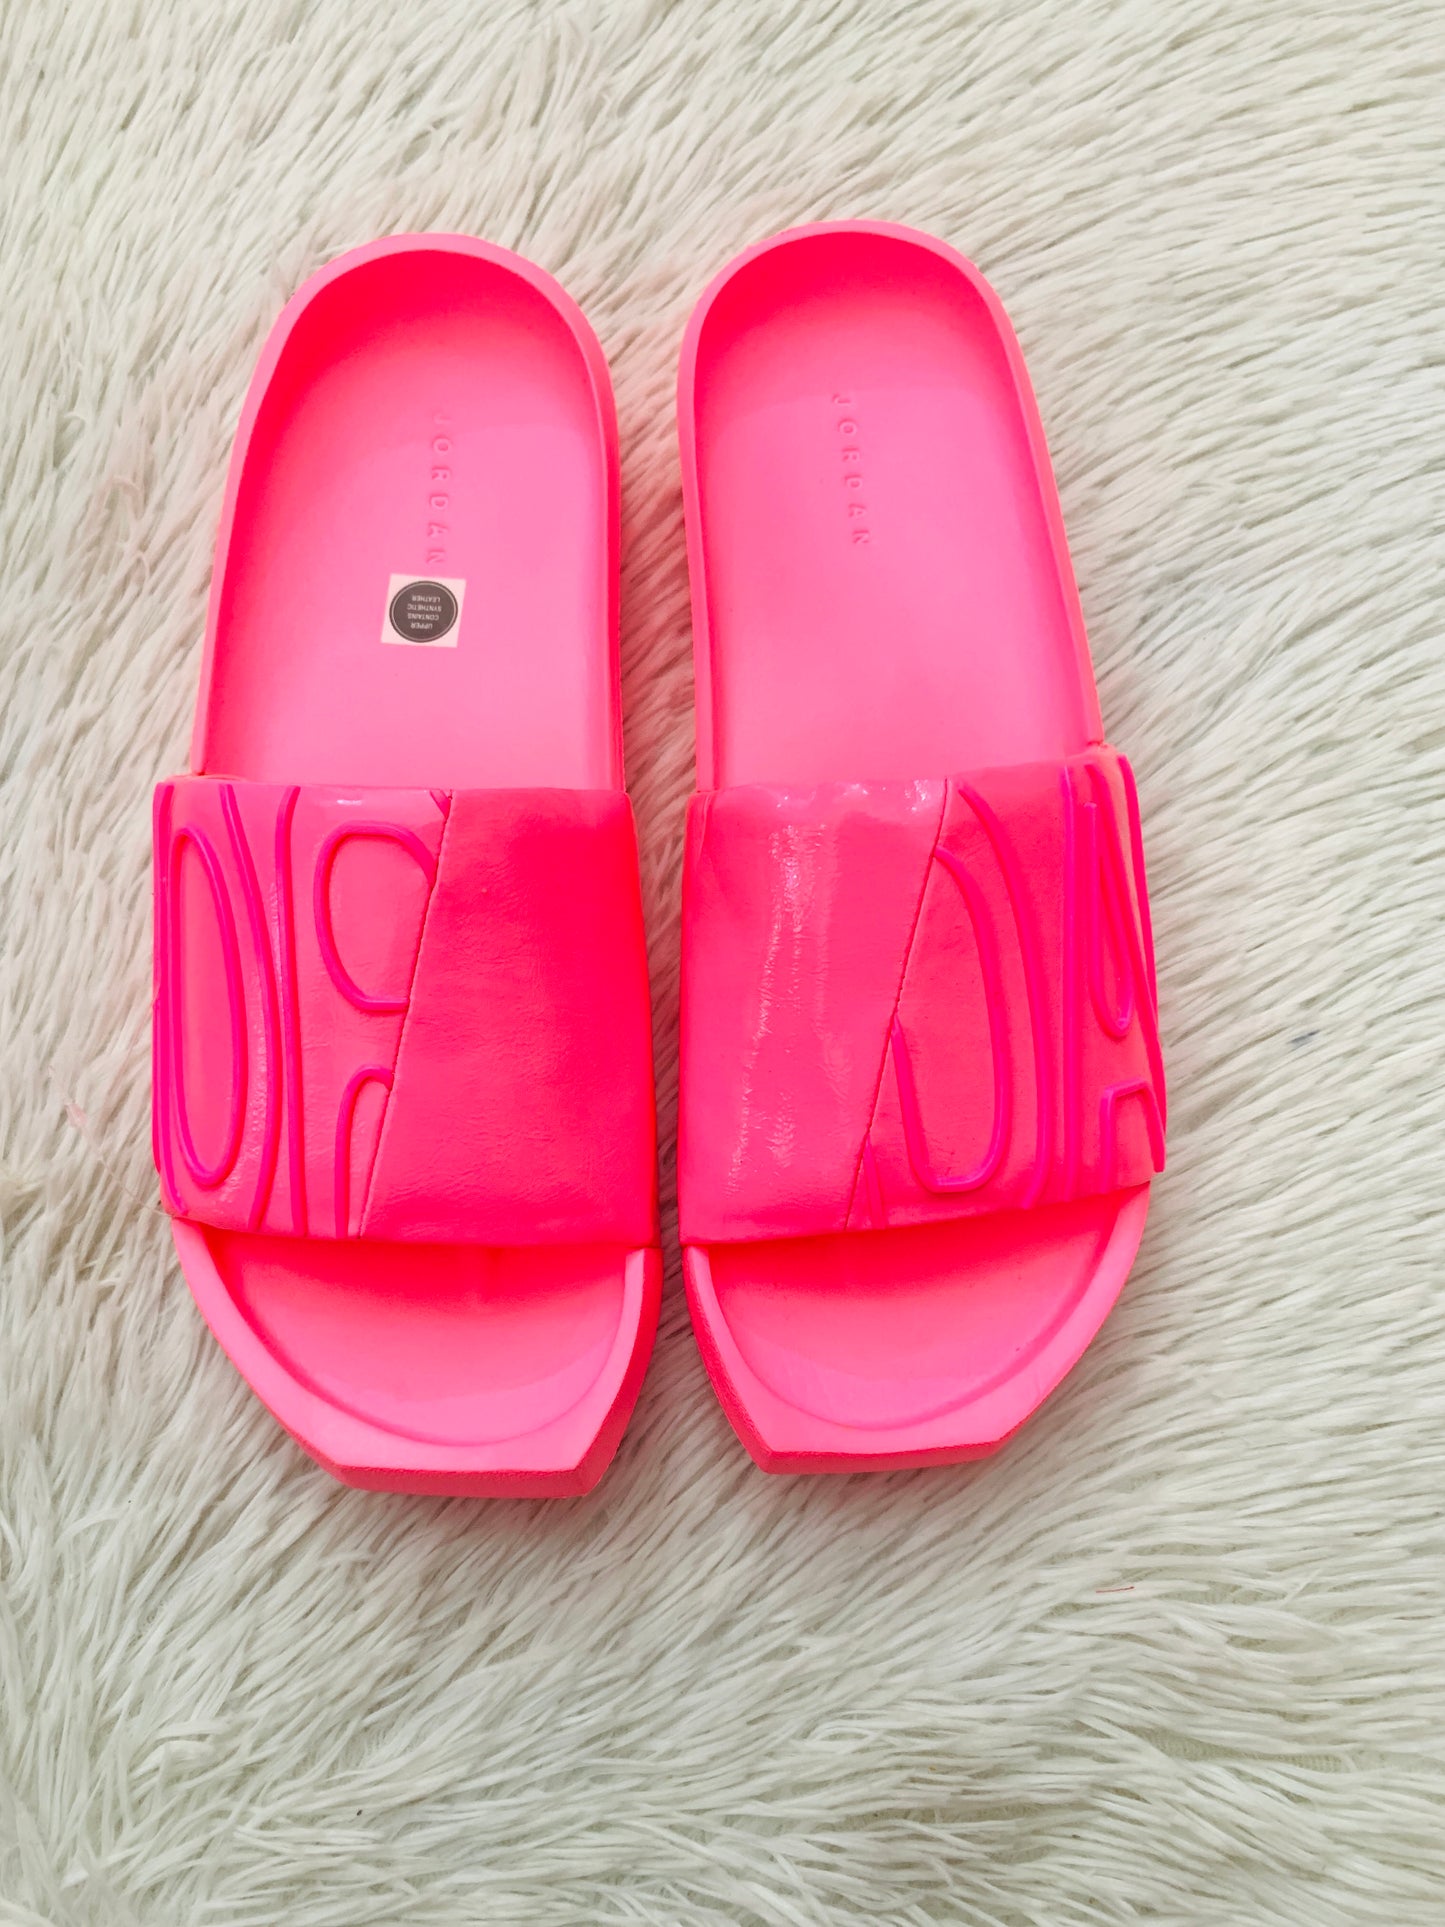 Sandalias Jordan original color rosado lumínico diseños de letras JOR